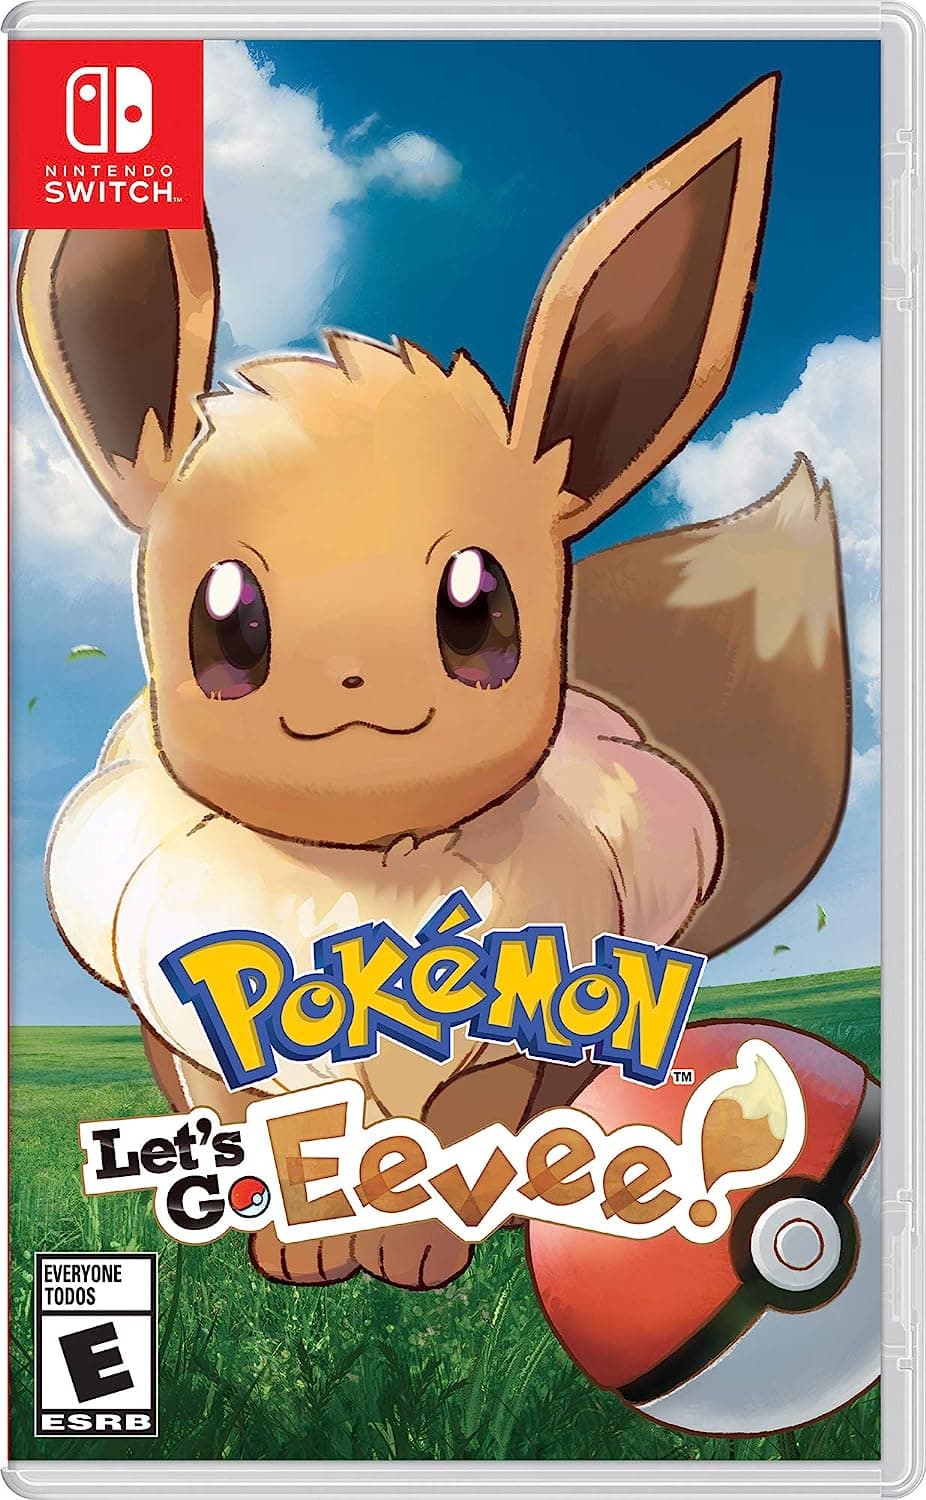 Pokemon Let's Go Eevee for Nintendo Switch.